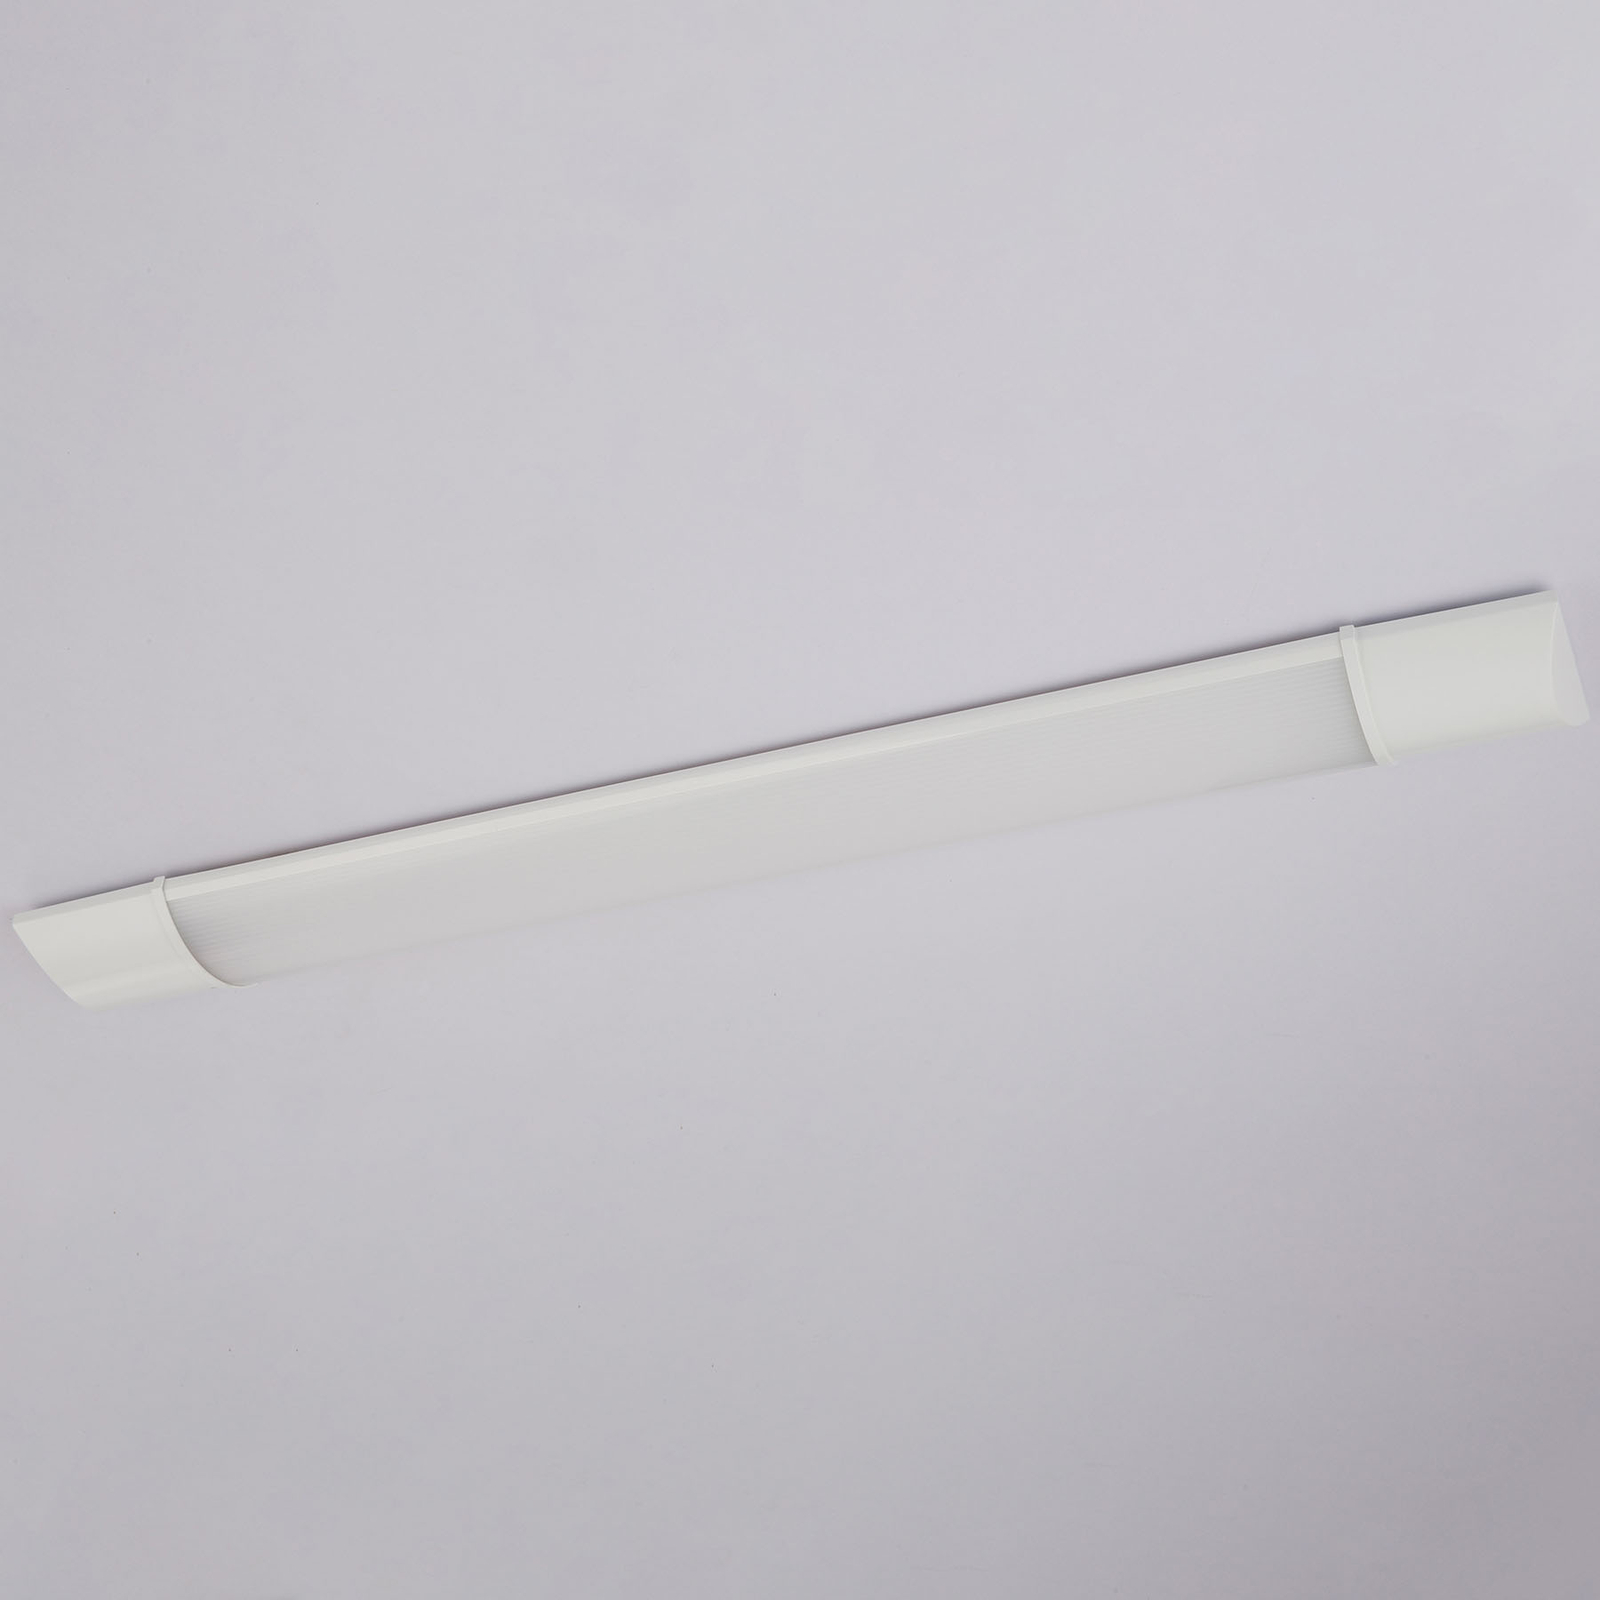 LED meubelverlichting Obara, IP20, 60 cm lang